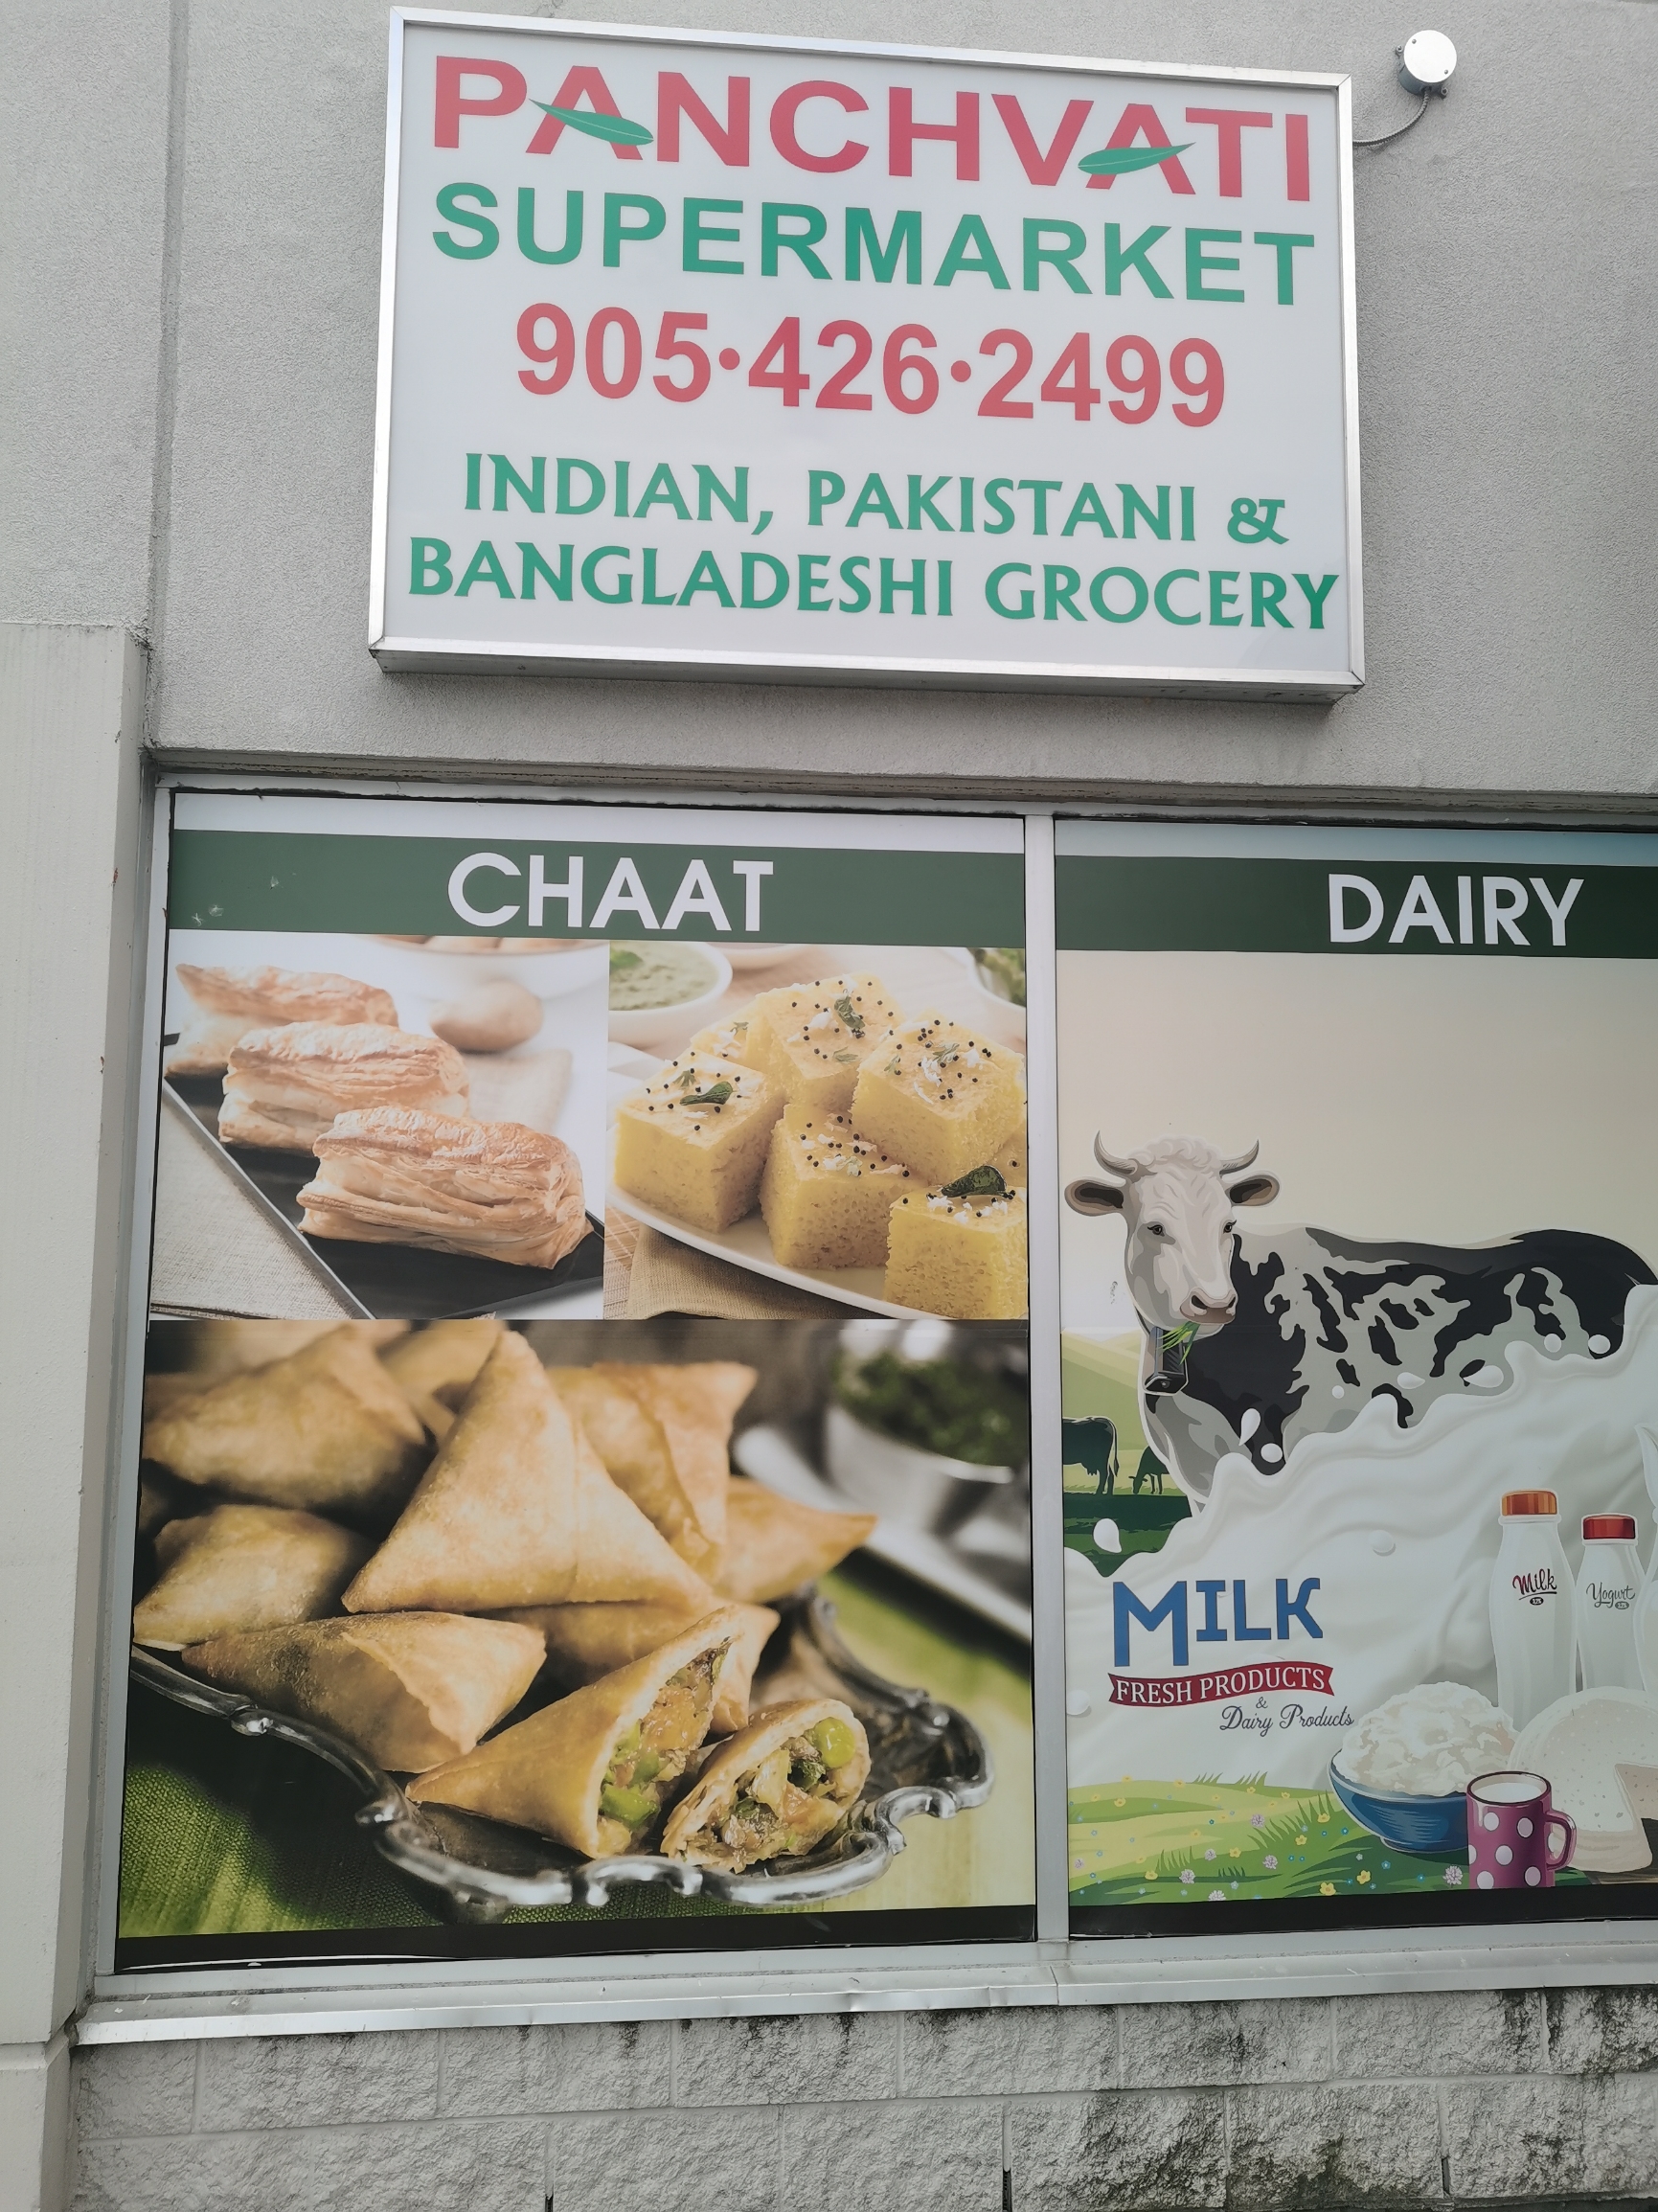 这个店位于ajax商业比较集中的区域，以前是一个华人超市，现在转给南亚类型超市了，主要经营印度人、巴